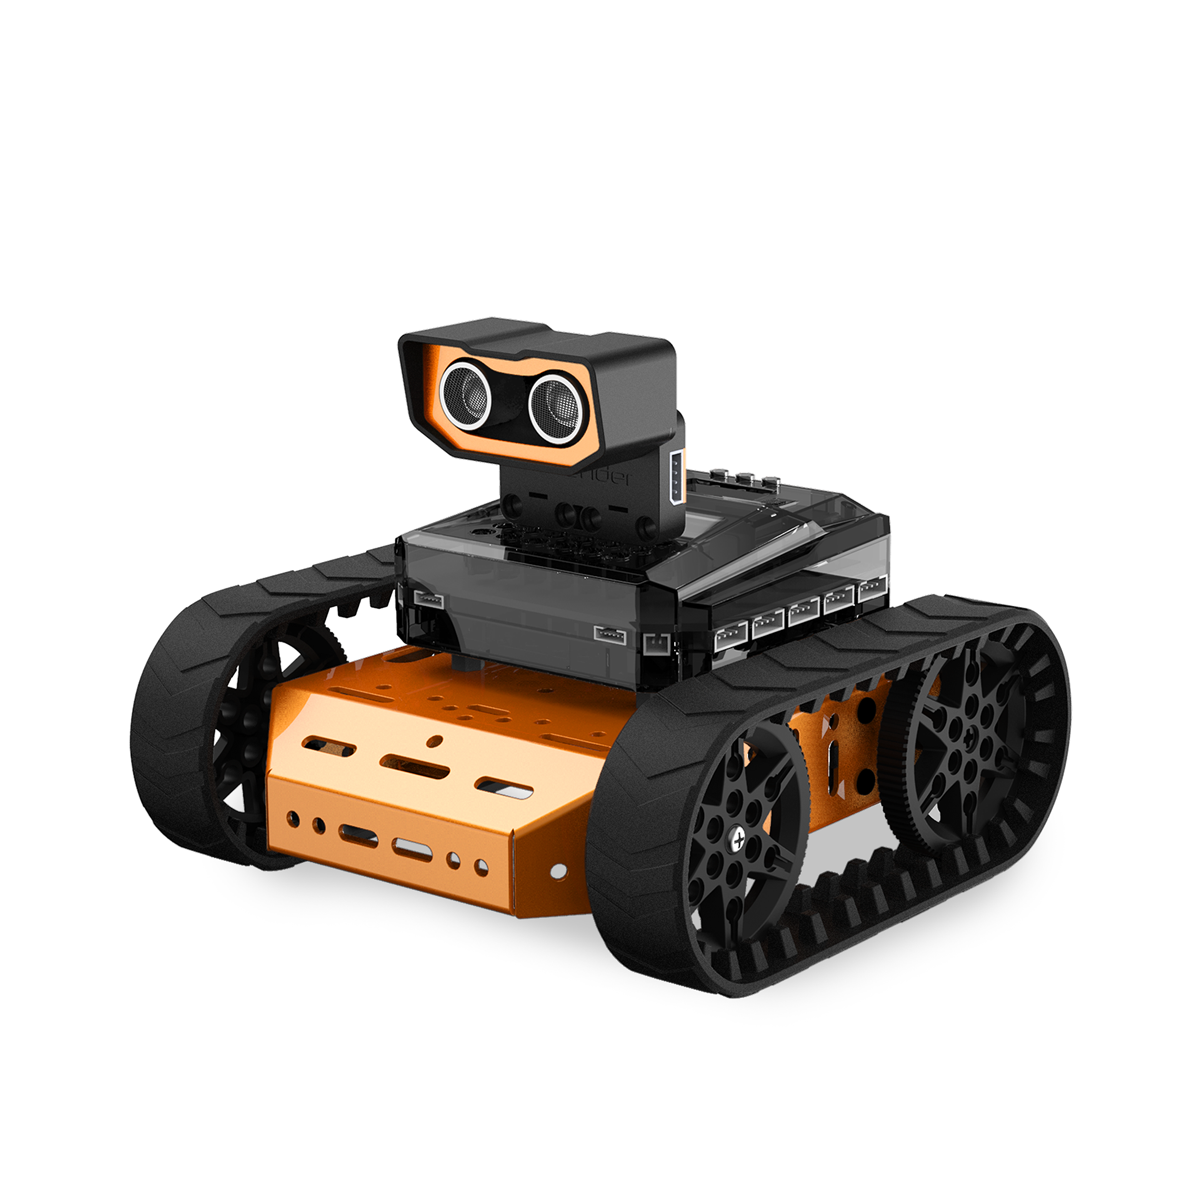 Микро база. Robot microbit конструктор. Программируемый робот-конструктор Hiwonder Lobot Microbot al. Робот на гусеницах с камерой. Конструкторы для робототехники на гусеницах.